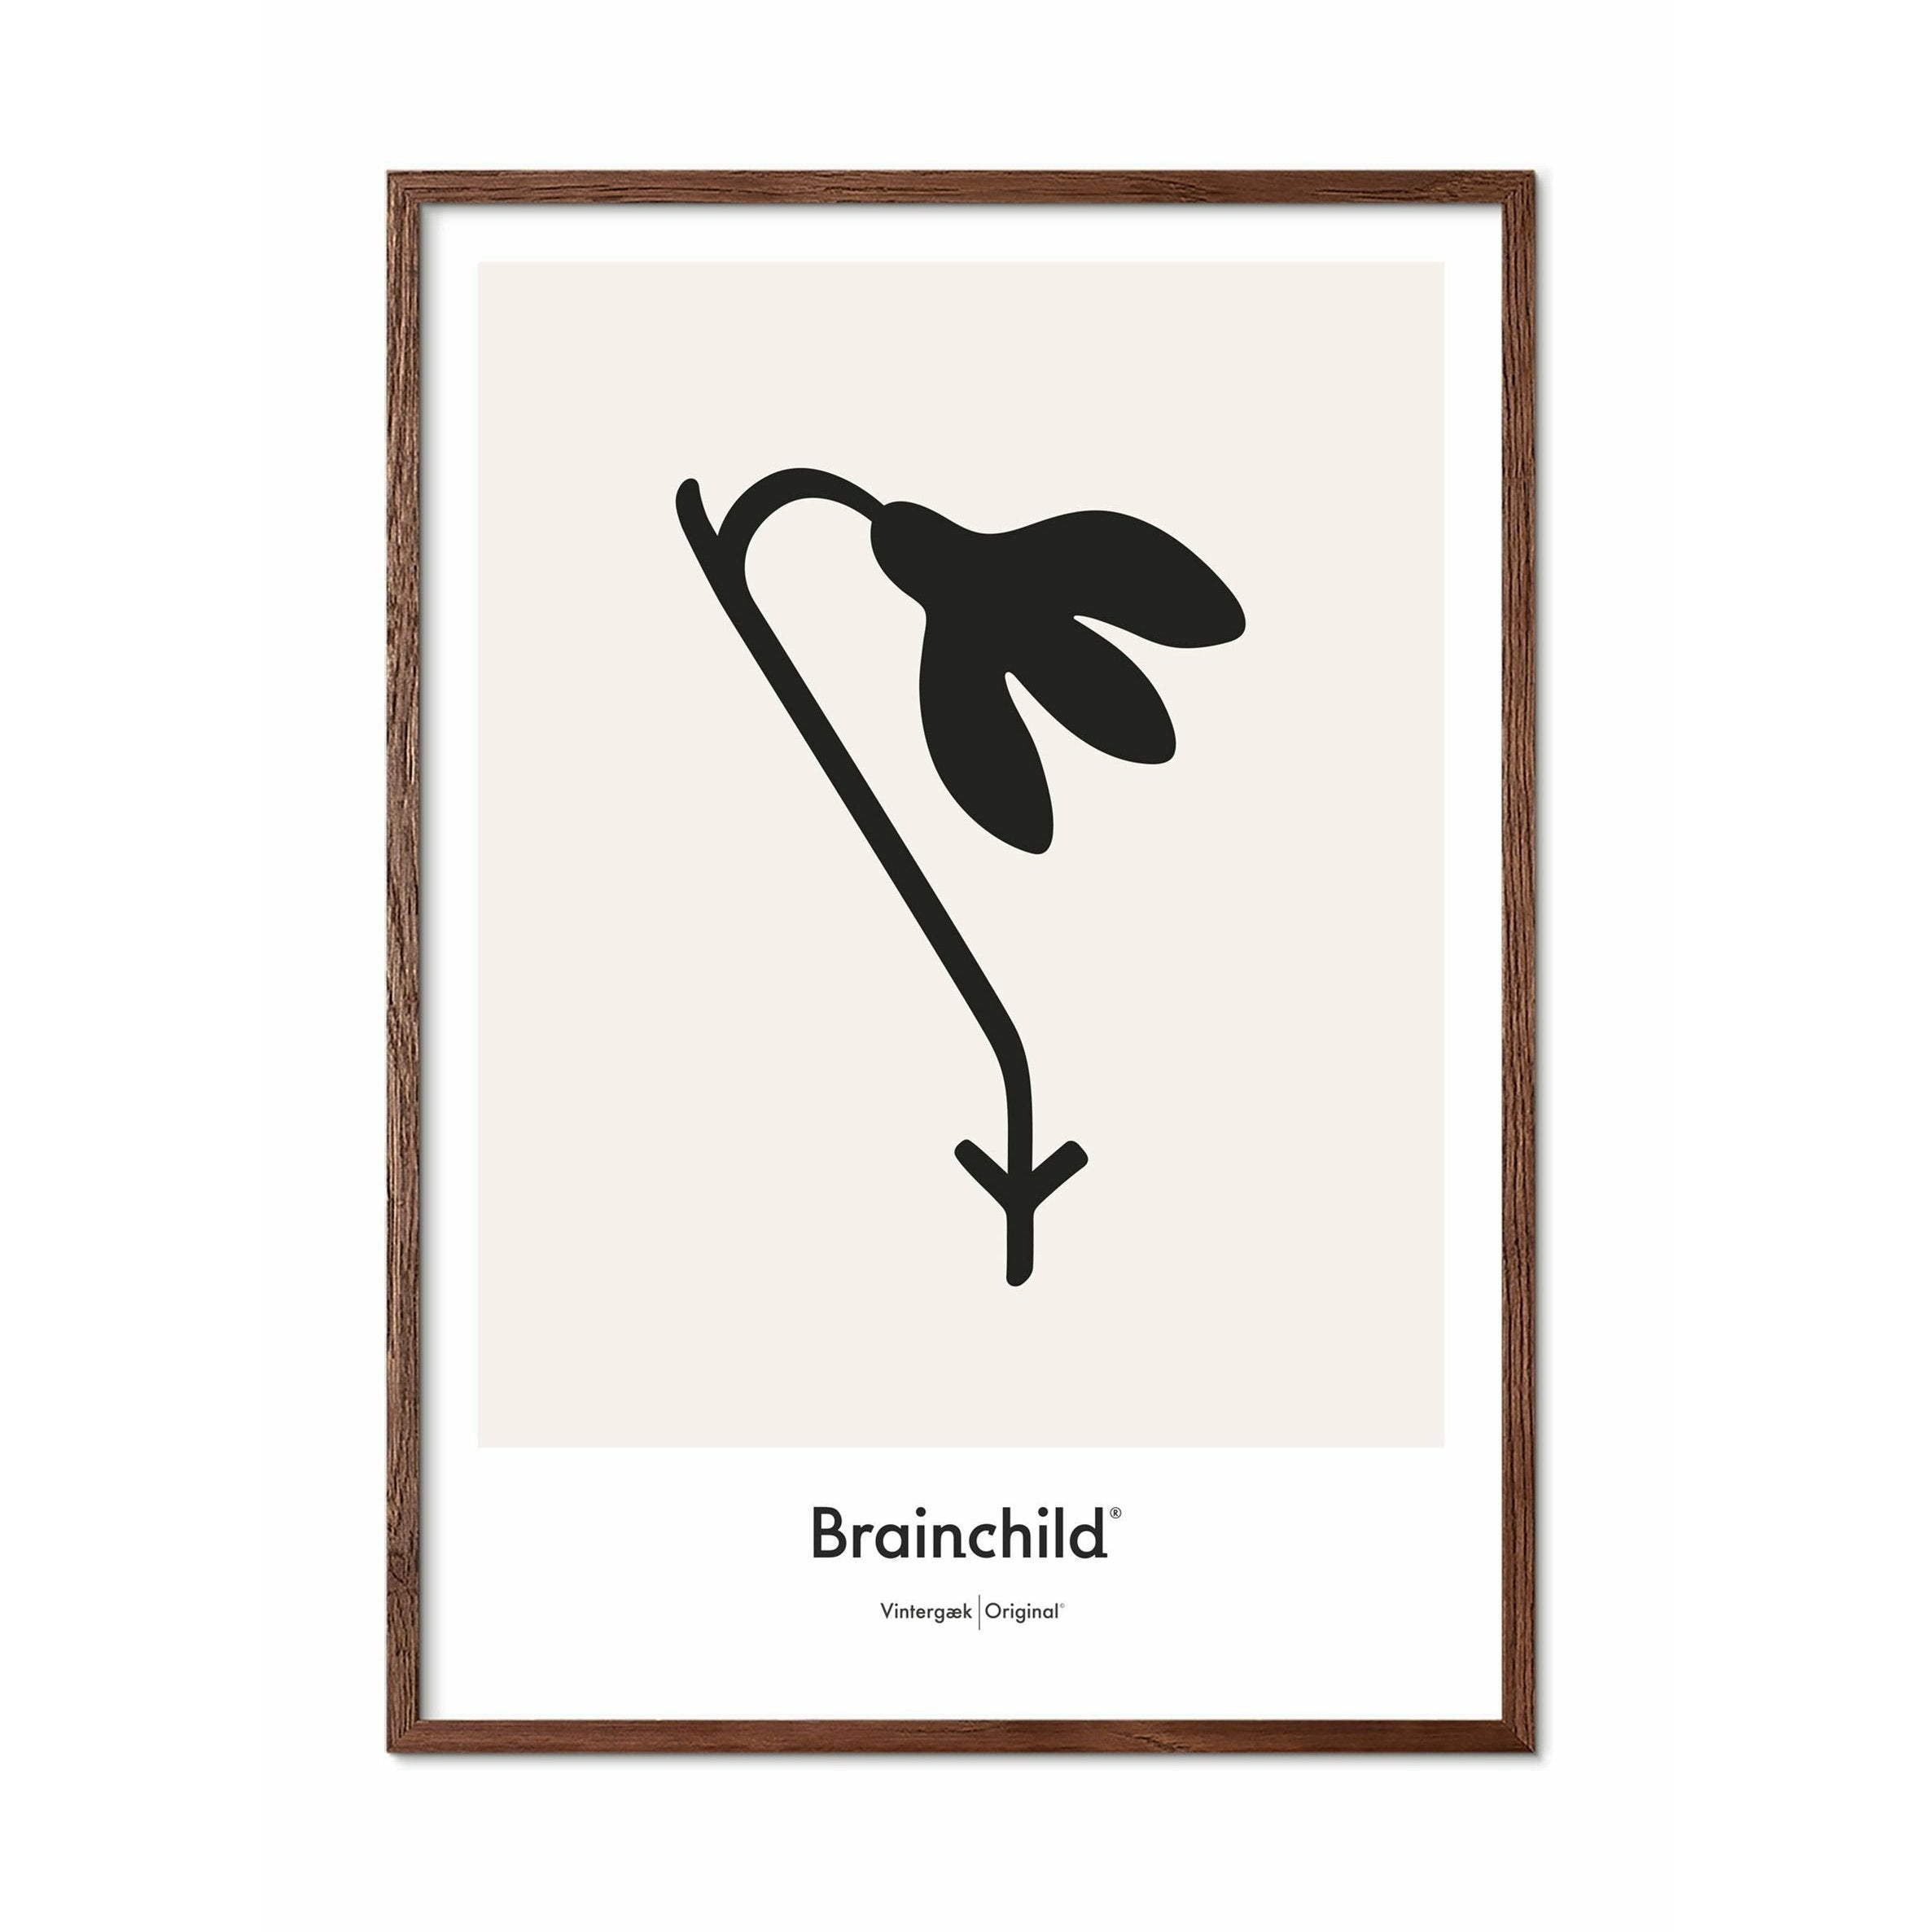 Brainchild Snowdrop Design Icon Poster, Frame Made Of Dark Wood 50 X70 Cm, Grey